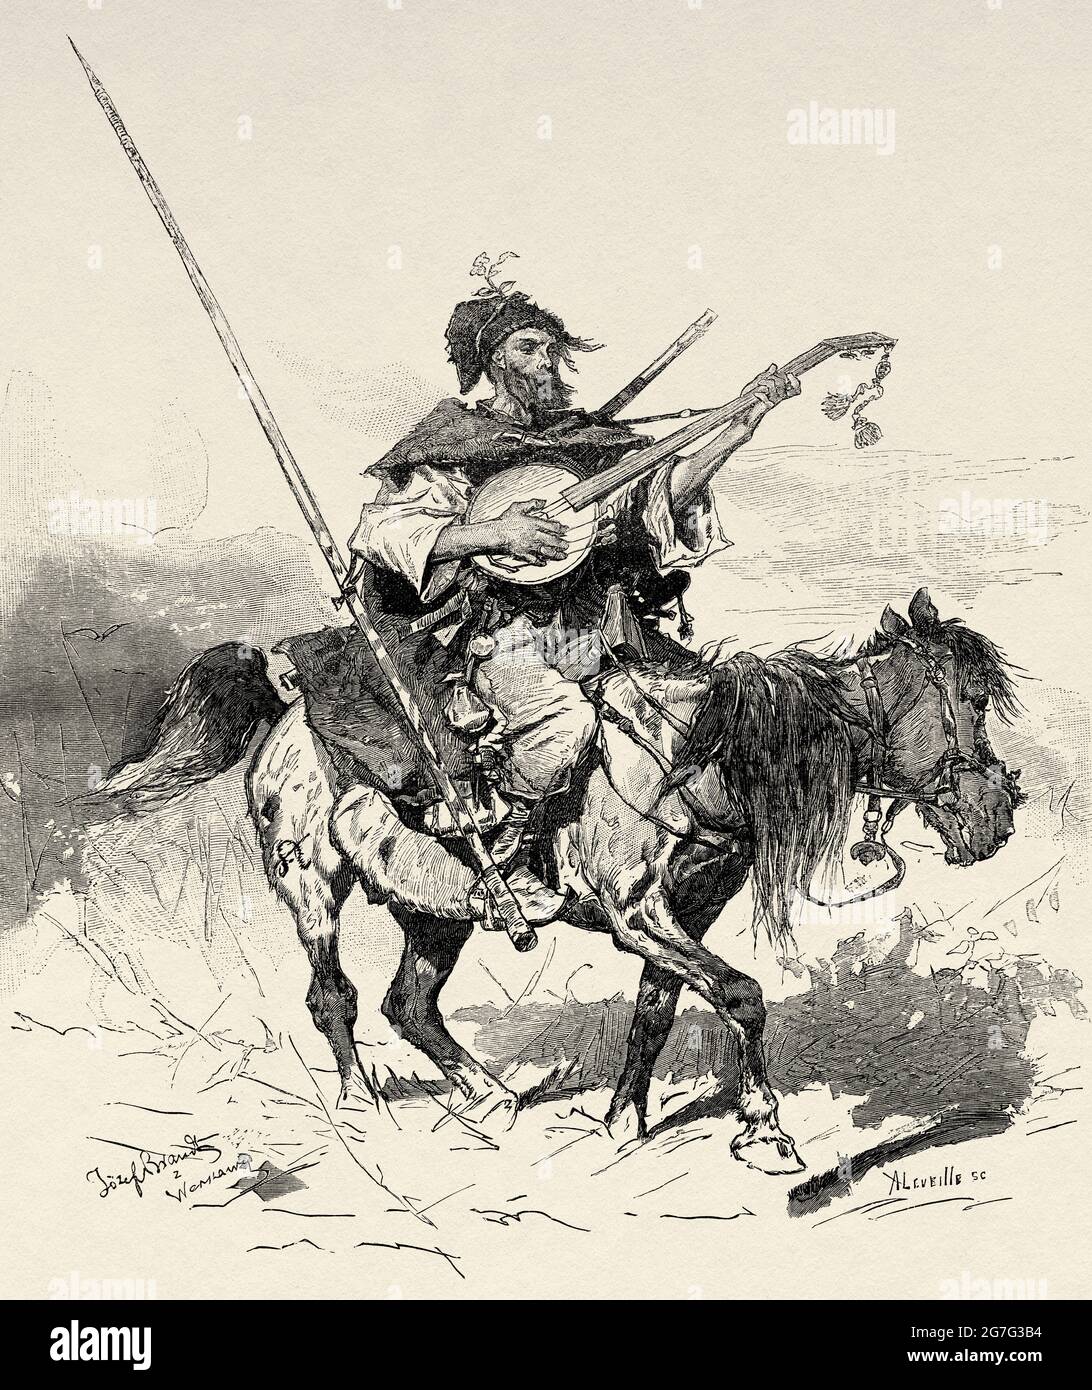 Ukrainian Cossack mounted on horseback playing a guitar, Ukraine, Europe. Old 19th century engraved illustration from El Mundo Ilustrado 1880 Stock Photo